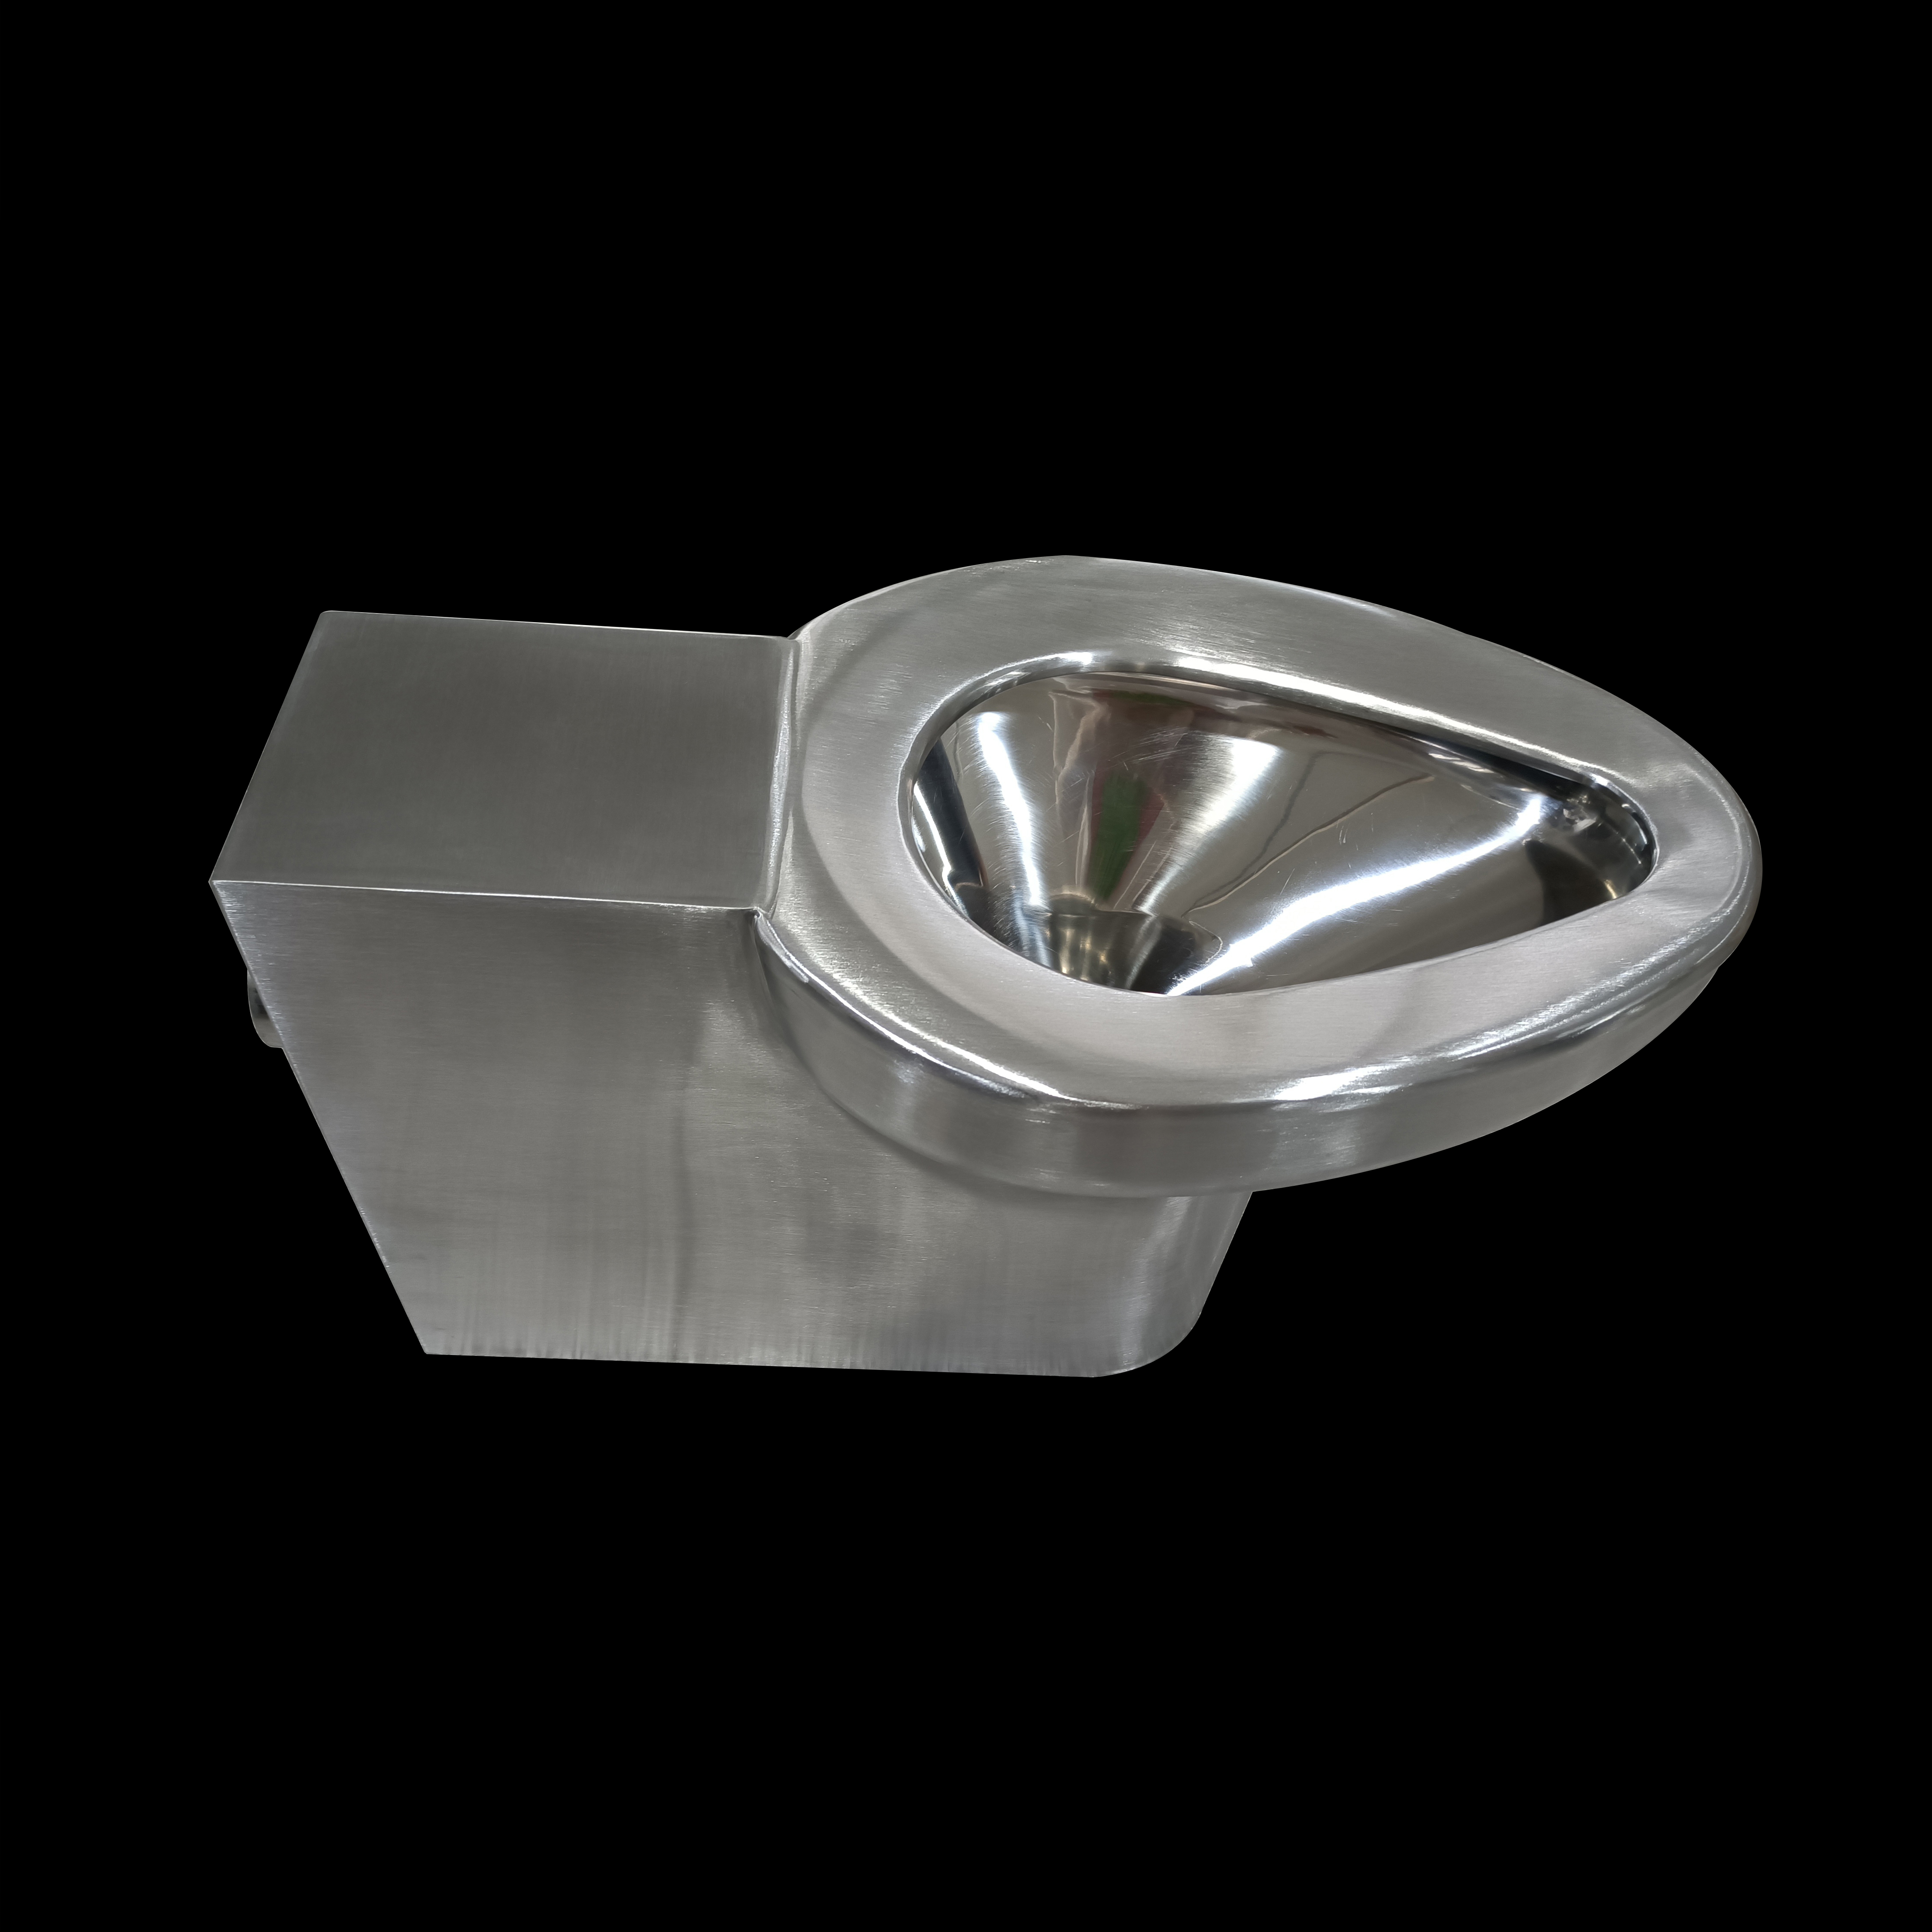 Vaso WC per montaggio a pavimento in acciaio inossidabile a risparmio idrico da 4,8 litri